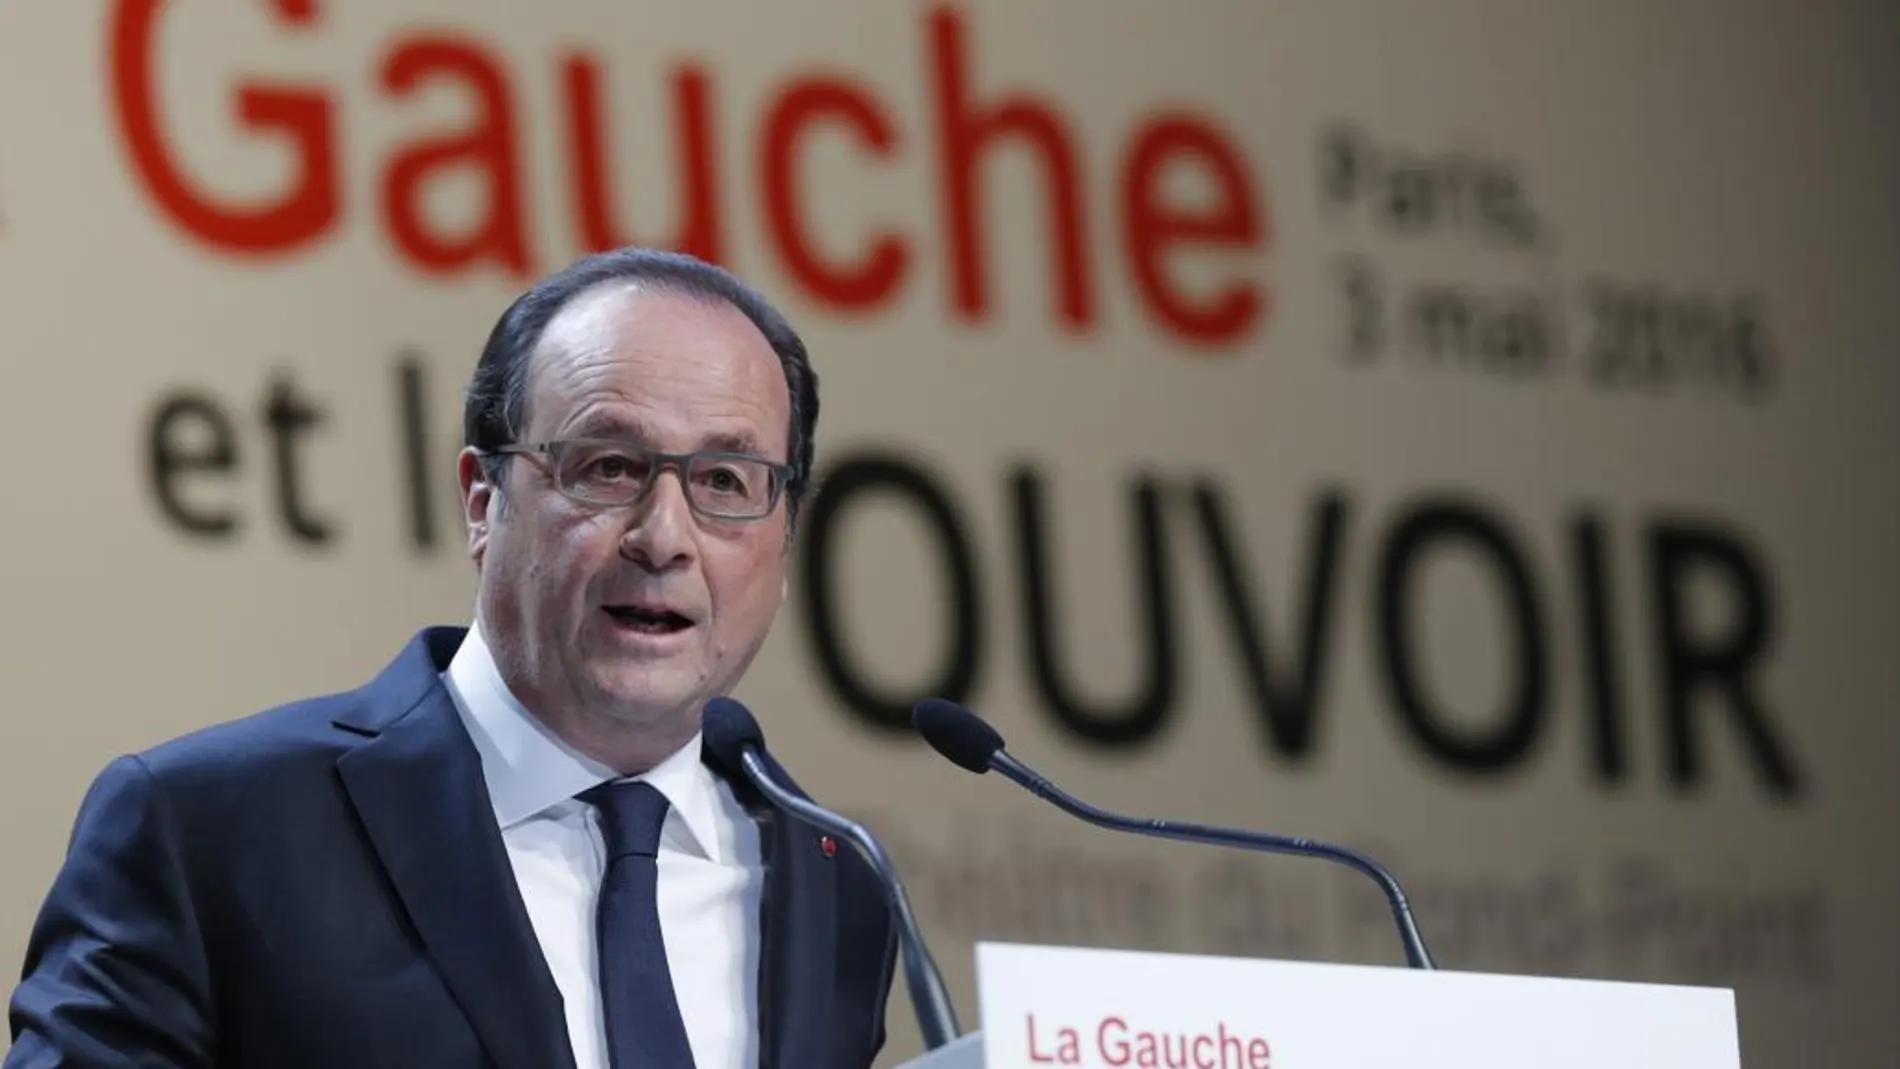 El presidente francés, el socialista François Hollande, pronuncia su discurso durante la conferencia "la izquierda y el poder"en la Fundación Jean-Jaurès de París